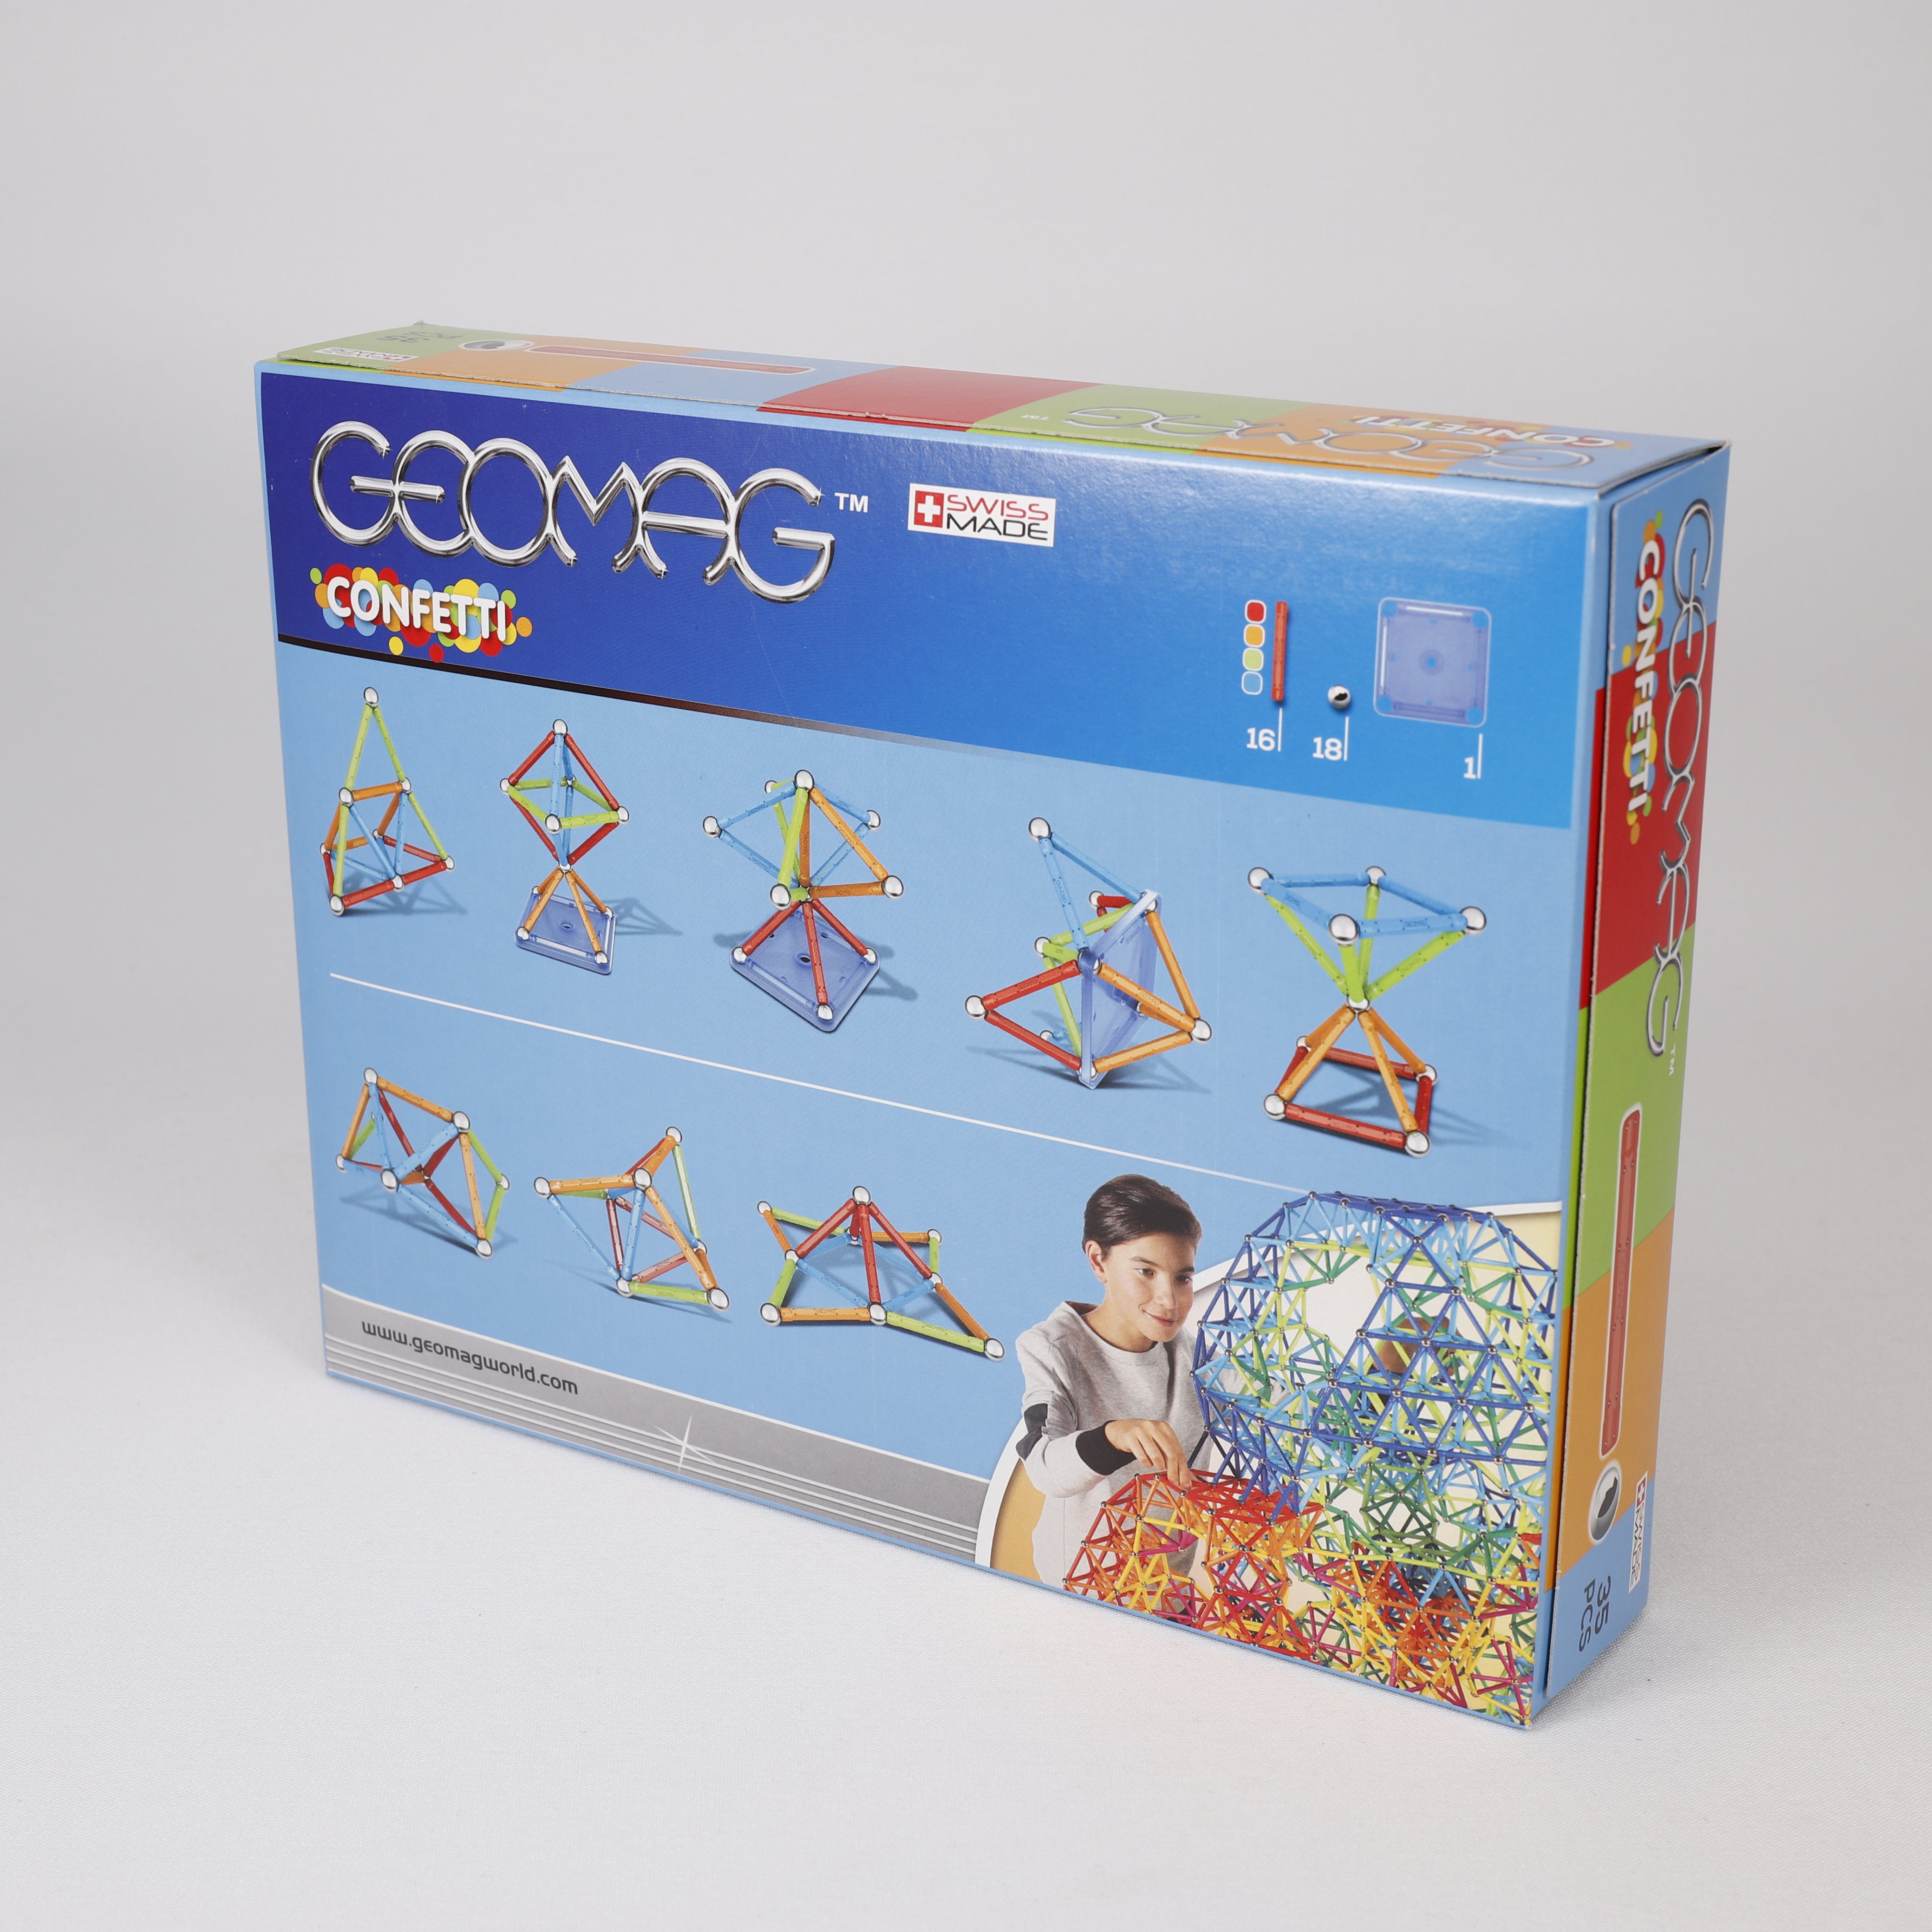 Geomag, Confetti, 35 Magnetbausteine 21x27cm, Lernspiele, Spielzeug, Swiss Made.